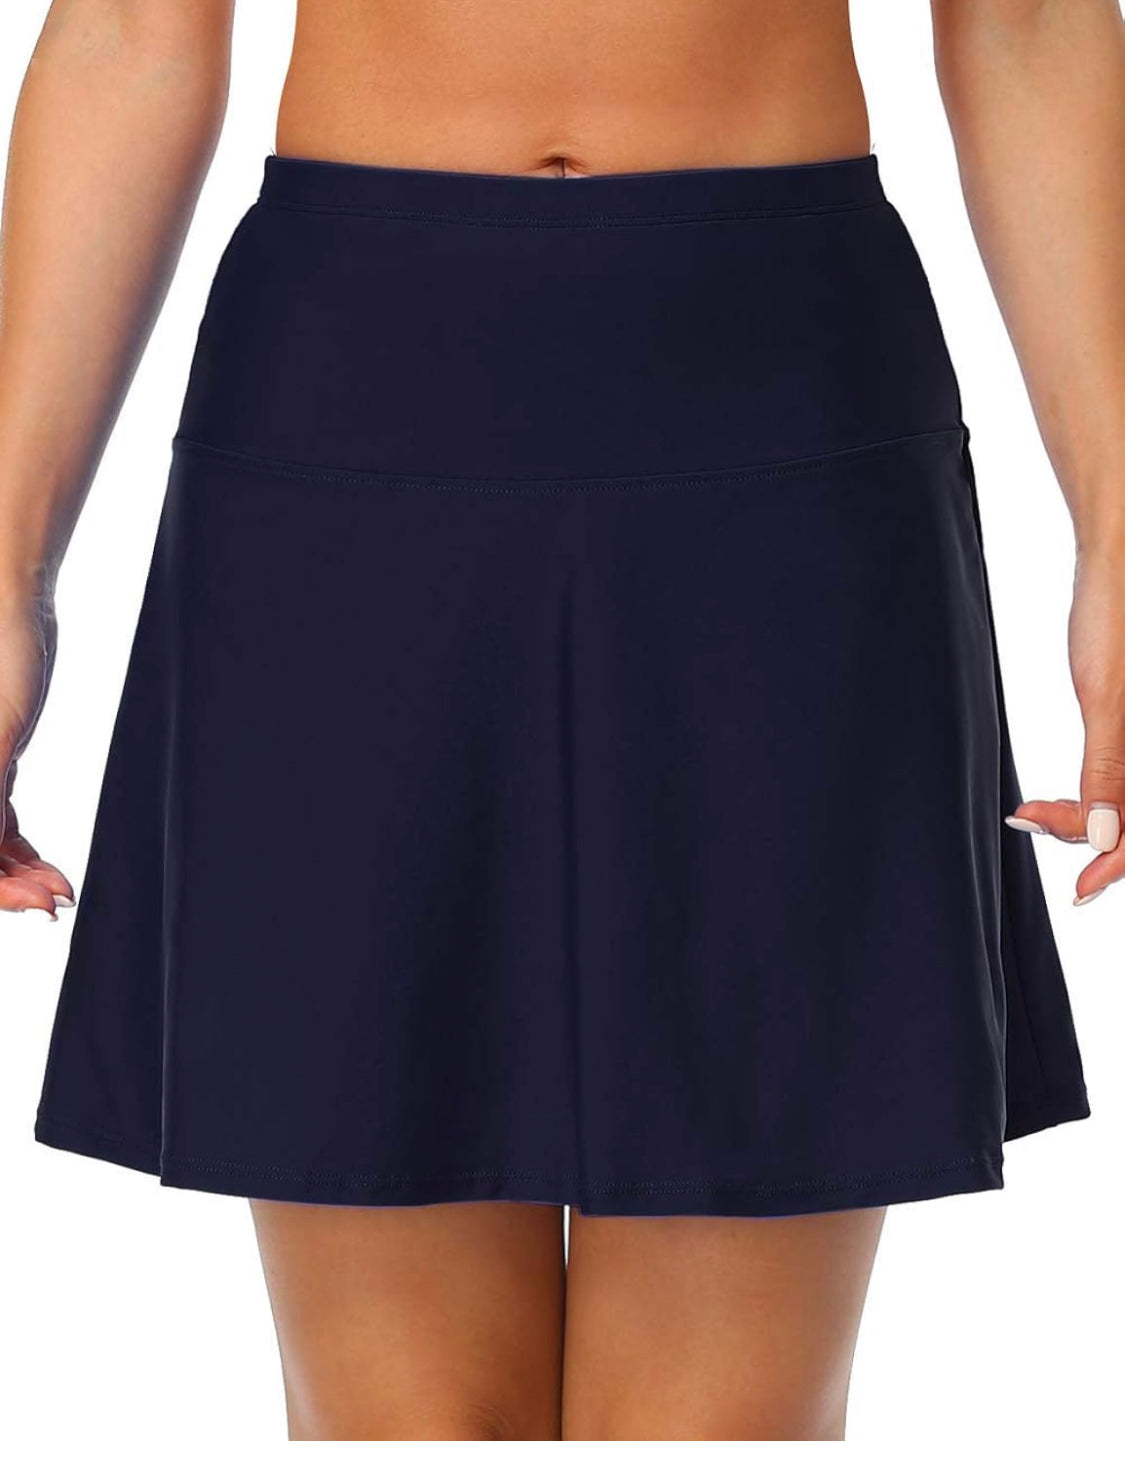 Hilor Women's High Waisted Swim Skirt Bottoms Athletic Tankini Swimsuit Skirt 14 NWT